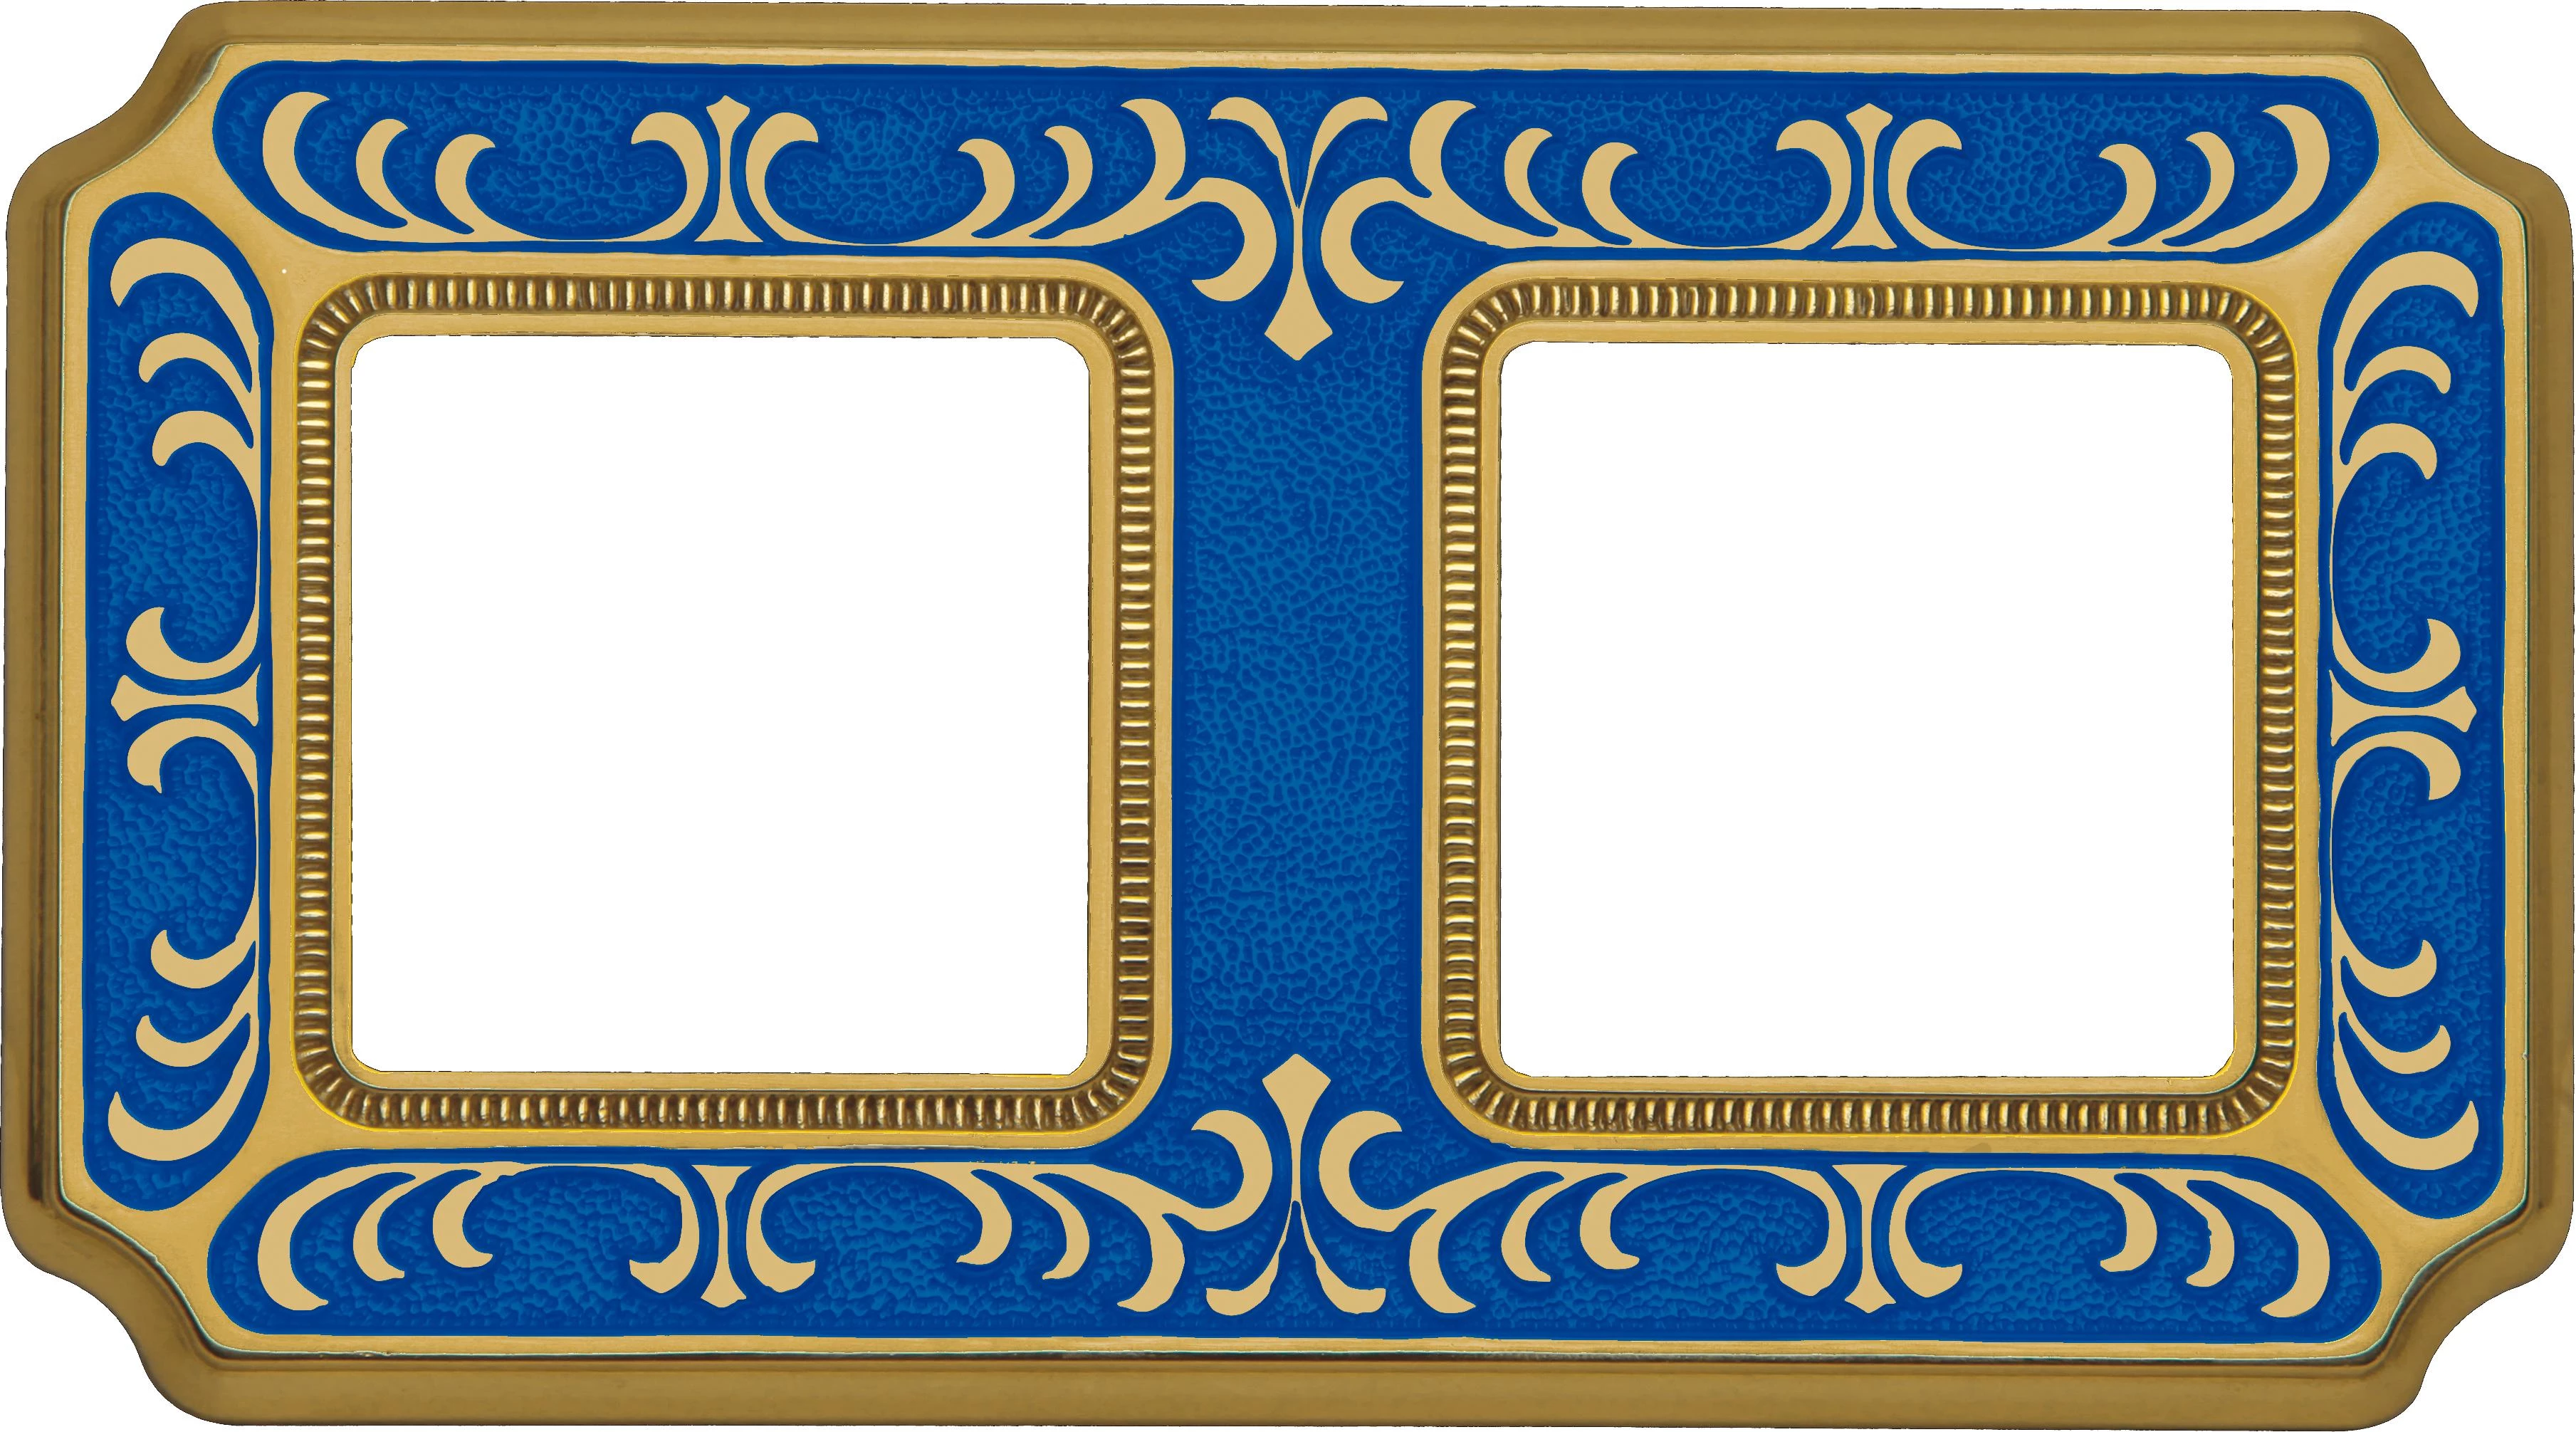  артикул FD01352AZEN название Рамка 2-ая (двойная), цвет Голубой сапфир, Siena, Fede